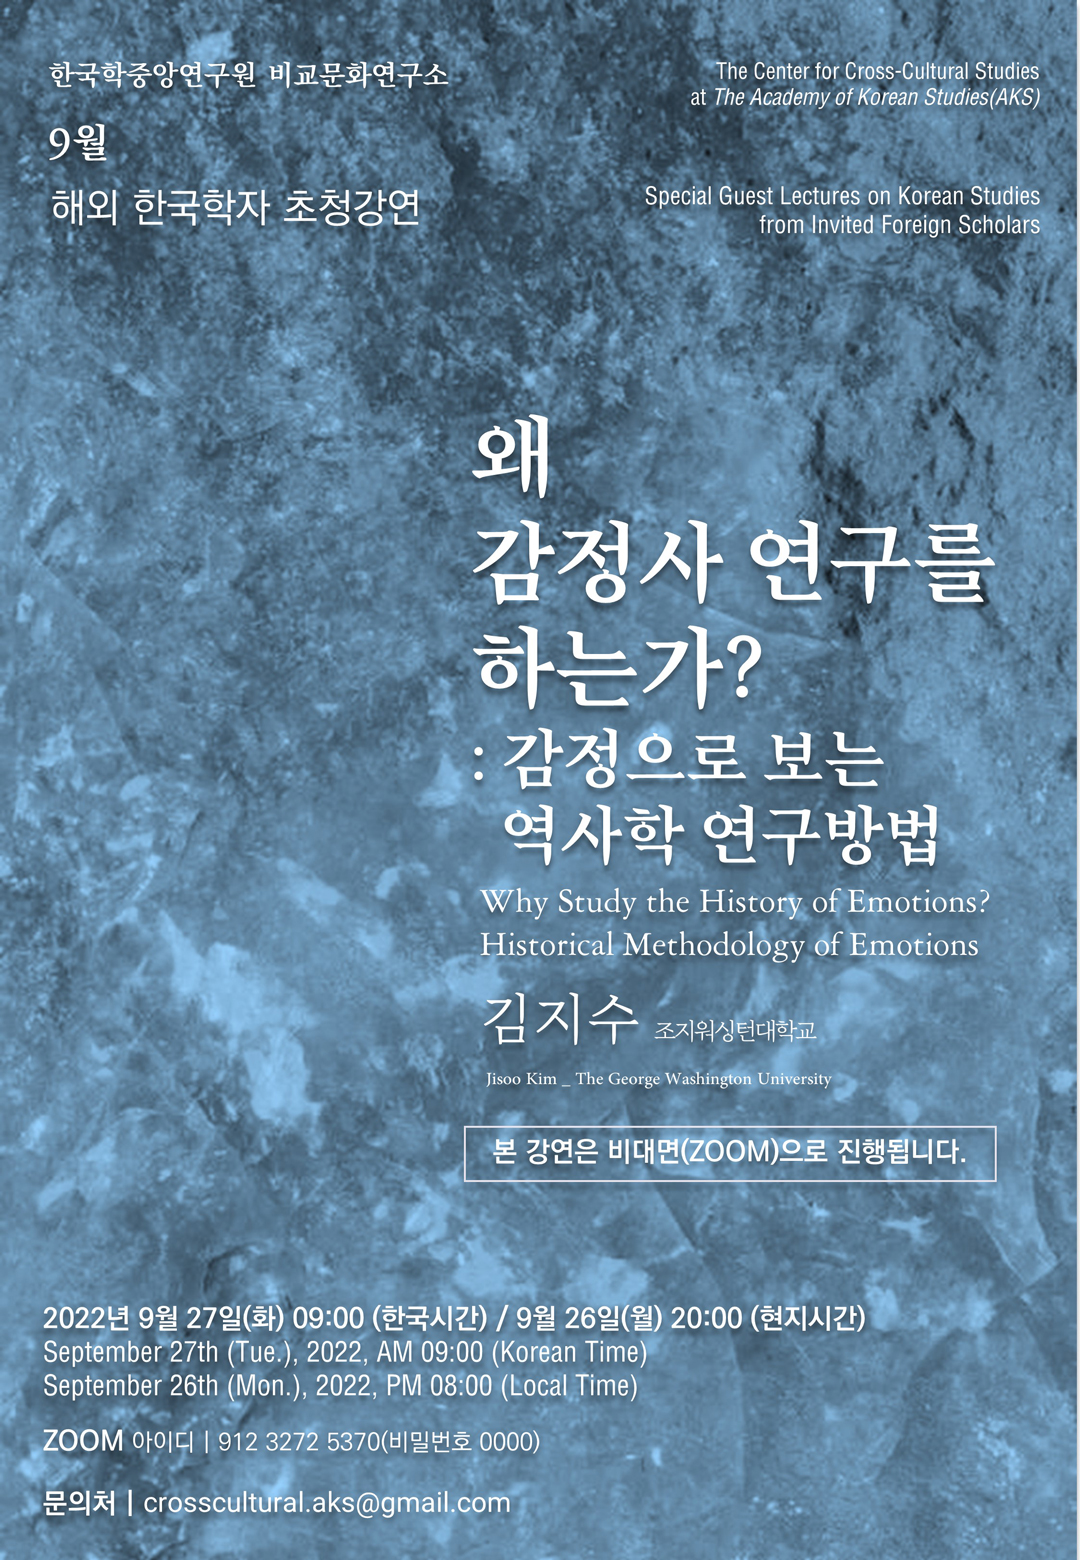 한국학중앙연구원 비교문화연구소, 9월 해외 한국학자 초청강연, The Center for Cross-Cultural Studies at The Academy of Korean Studies(AKS), Special Guest Lectures on Korean Studies from Invited Foreign Scholars, 왜 감정사 연구를 하는가? : 감정으로 보는 역사학 연구방법, Why Study the Histrory of Emotions? Historical Methodology of Emotions, 김지수 조지워싱턴대학교, 본 강연은 비대면(ZOOM)으로 진행됩니다. 2022년 9월 27일(화) 09:00 (한국시간) / 9월 26일(월) 20:00 (현지시간), September 27th (Tue.), 2022, AM 09:00 (Korean Time) / September 26th (Mon.), 2022, PM 08:00 (Local Time), ZOOM 아이디 | 912 3272 5370(비밀번호 0000), 문의처 | crosscultural.aks@gmail.com